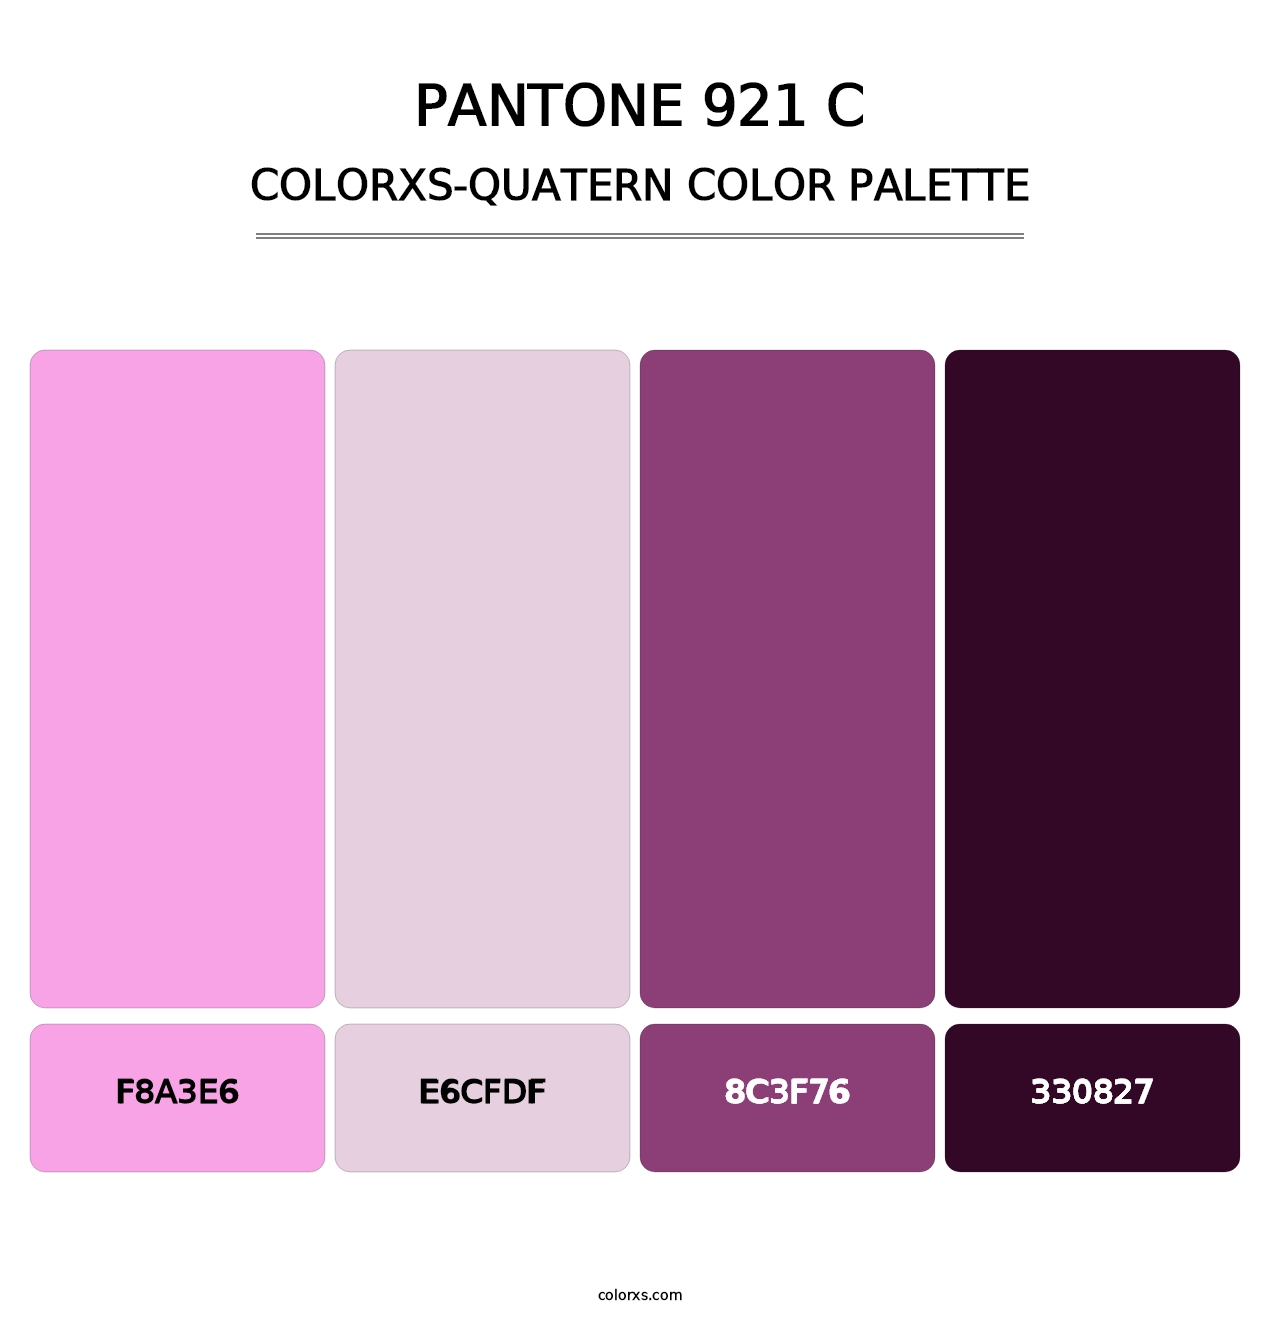 PANTONE 921 C - Colorxs Quatern Palette